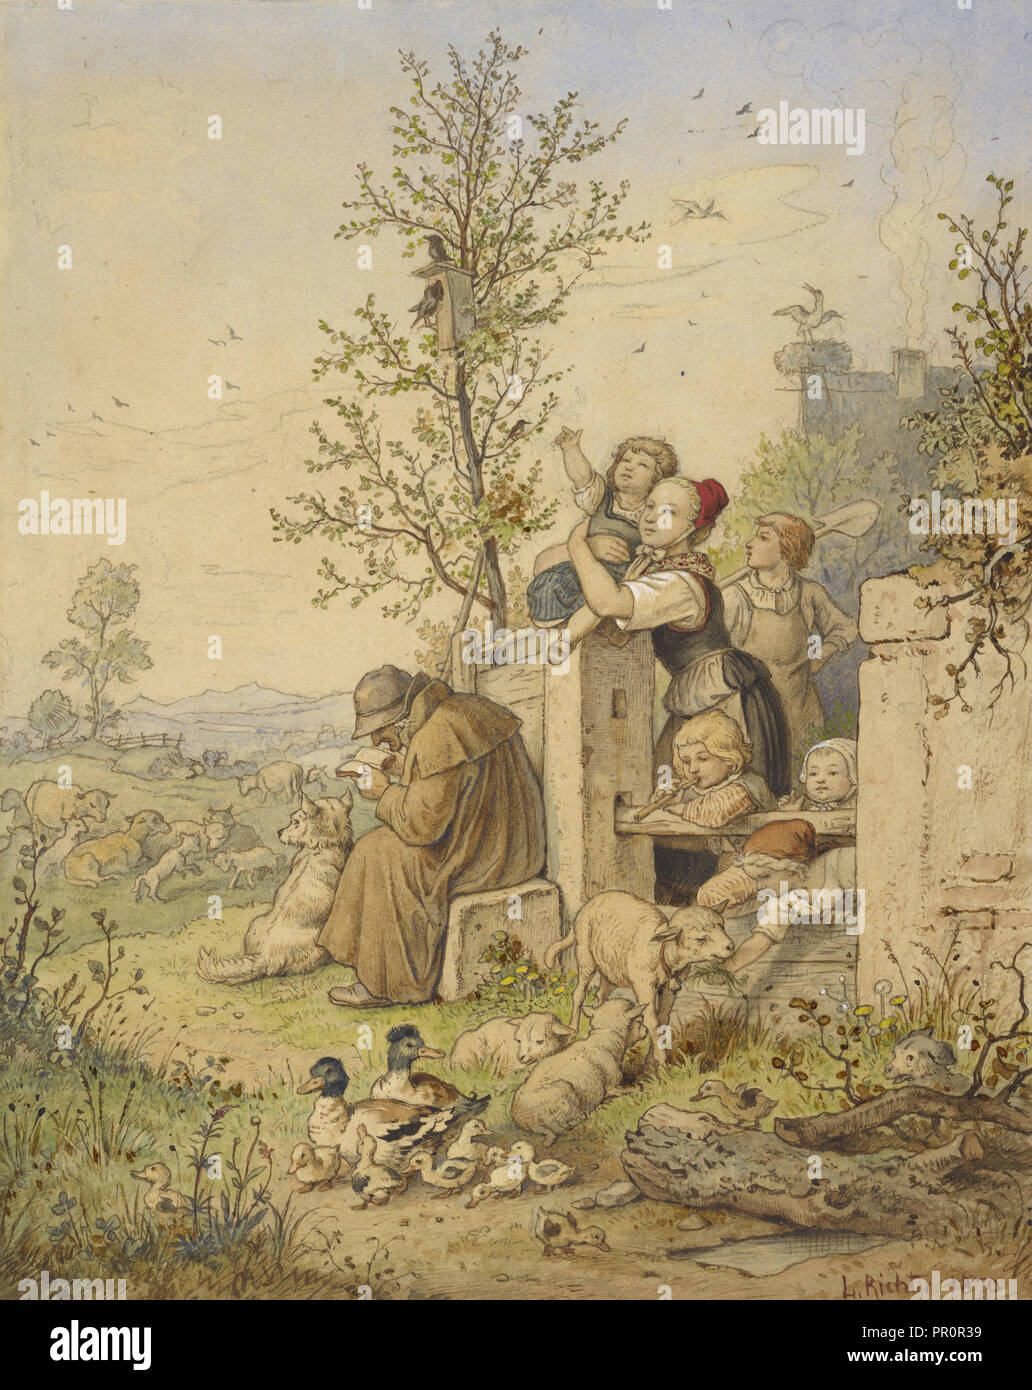 La primavera ha llegado; Ludwig Richter, Alemán, 1803 - 1884, Alemania; 1870; Acuarela, grafito, gouache y toques de Tiza roja Foto de stock